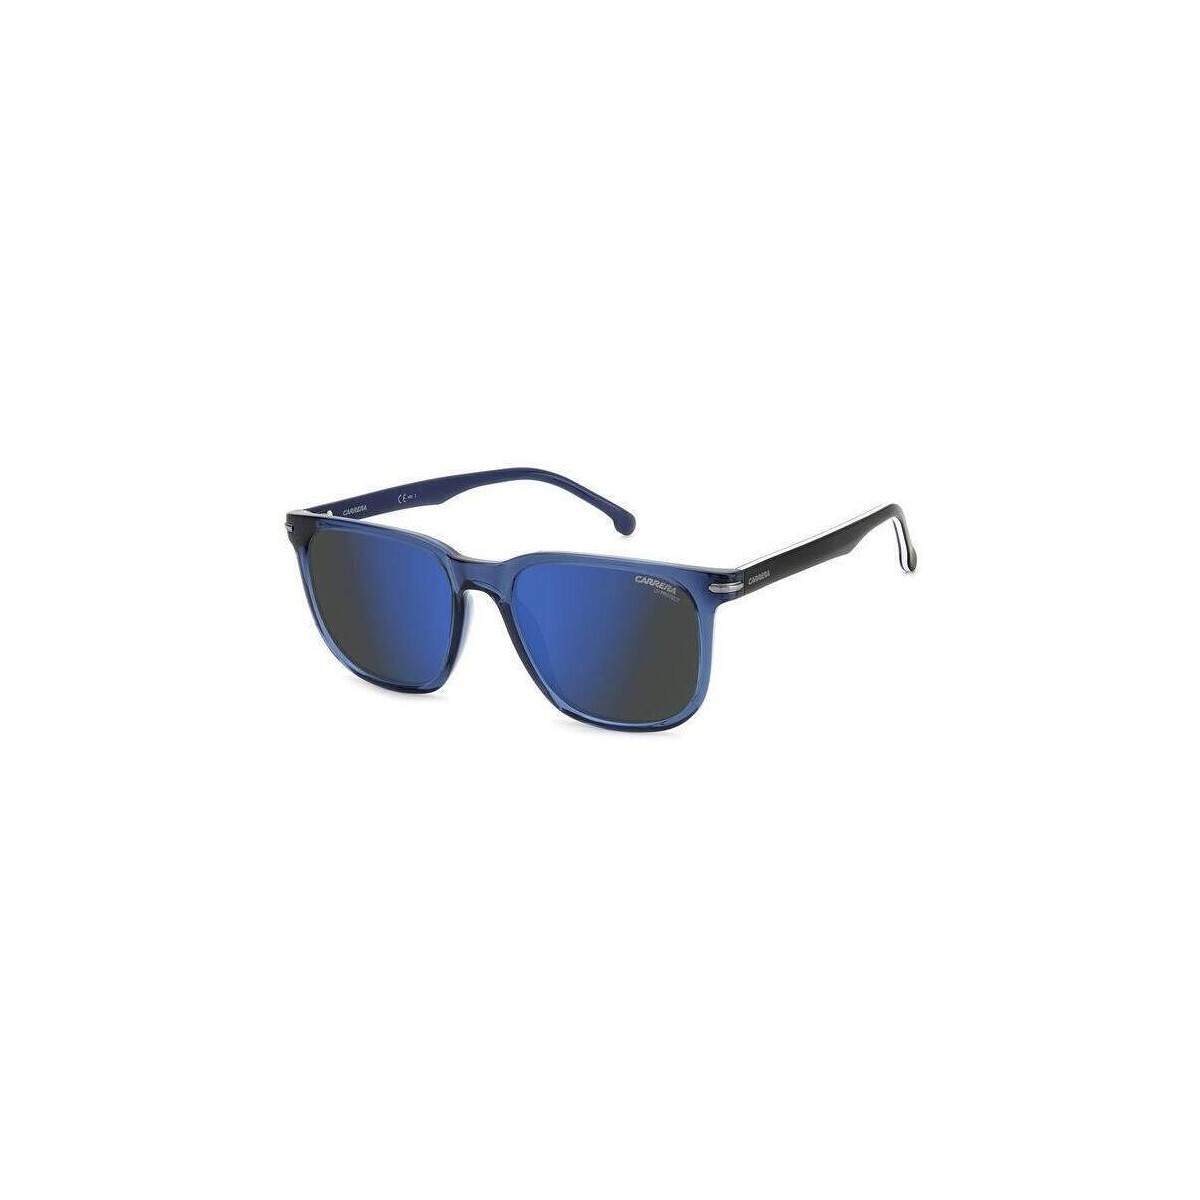 Montres & Bijoux Lunettes de soleil Carrera 300/S cod. Lunettes de soleil, Bleu/Bleu, 54 mm Bleu